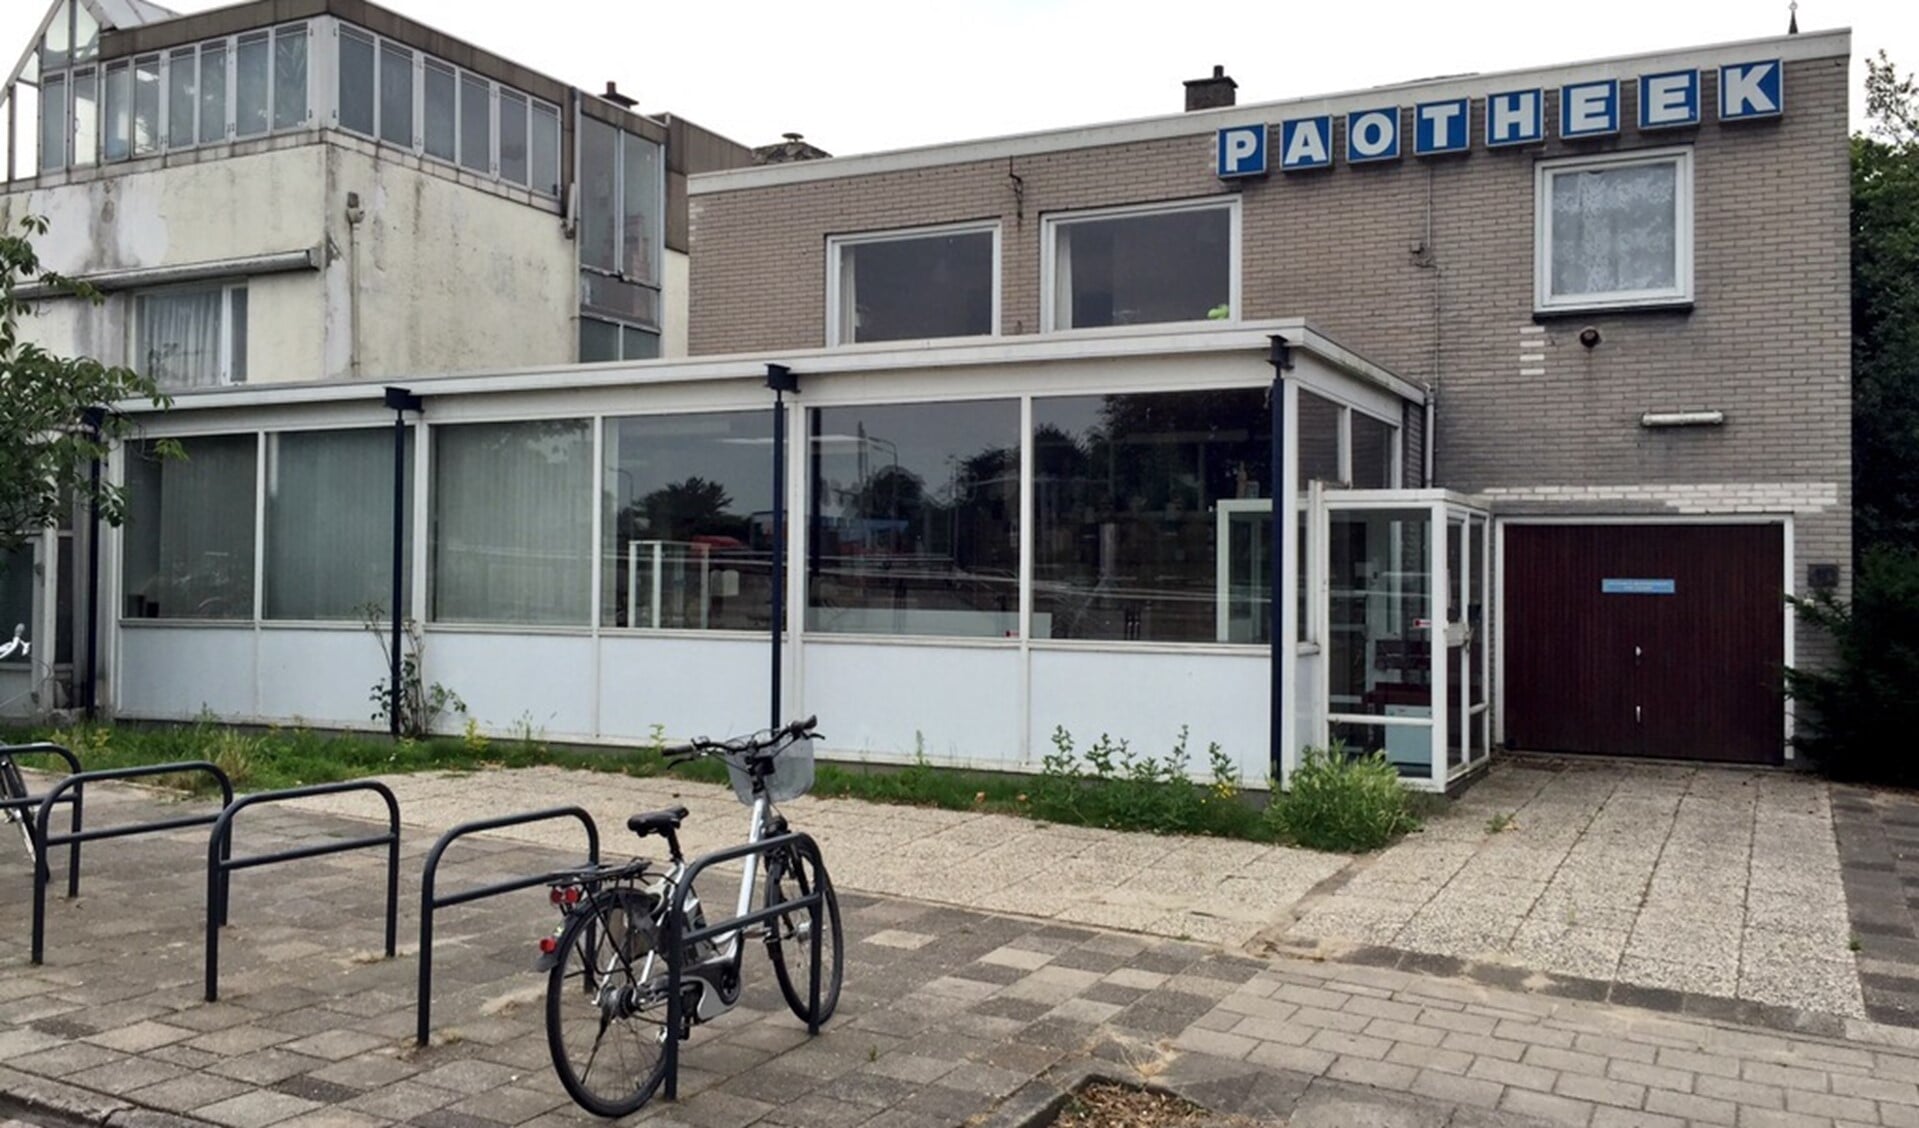 De voormalig apotheek verandert langzaam in een spookhuis. Foto: Martijn Mastenbroek